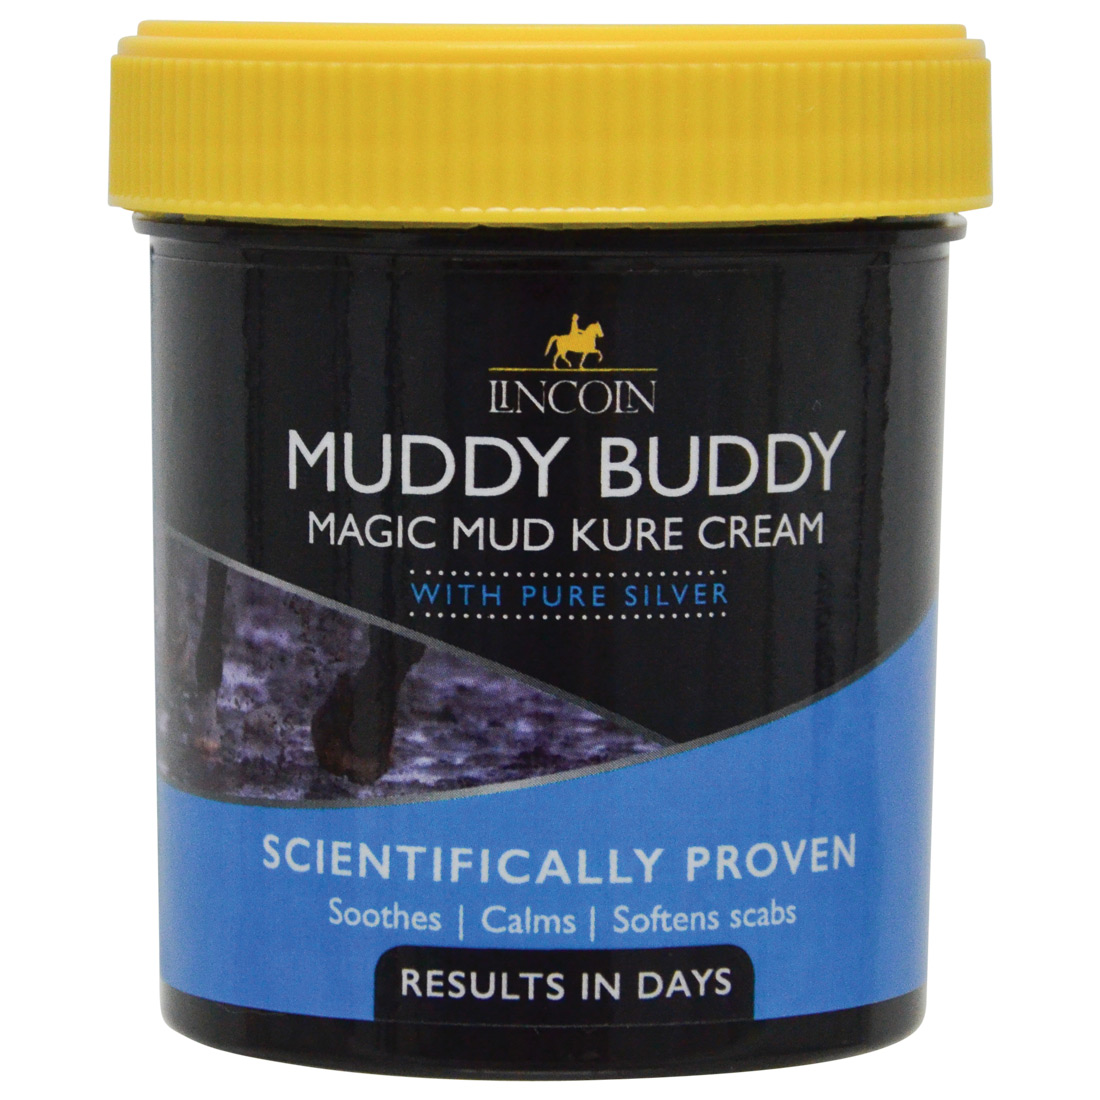 Lincoln Muddy Buddy Magic Mud Kure Cream – 200g